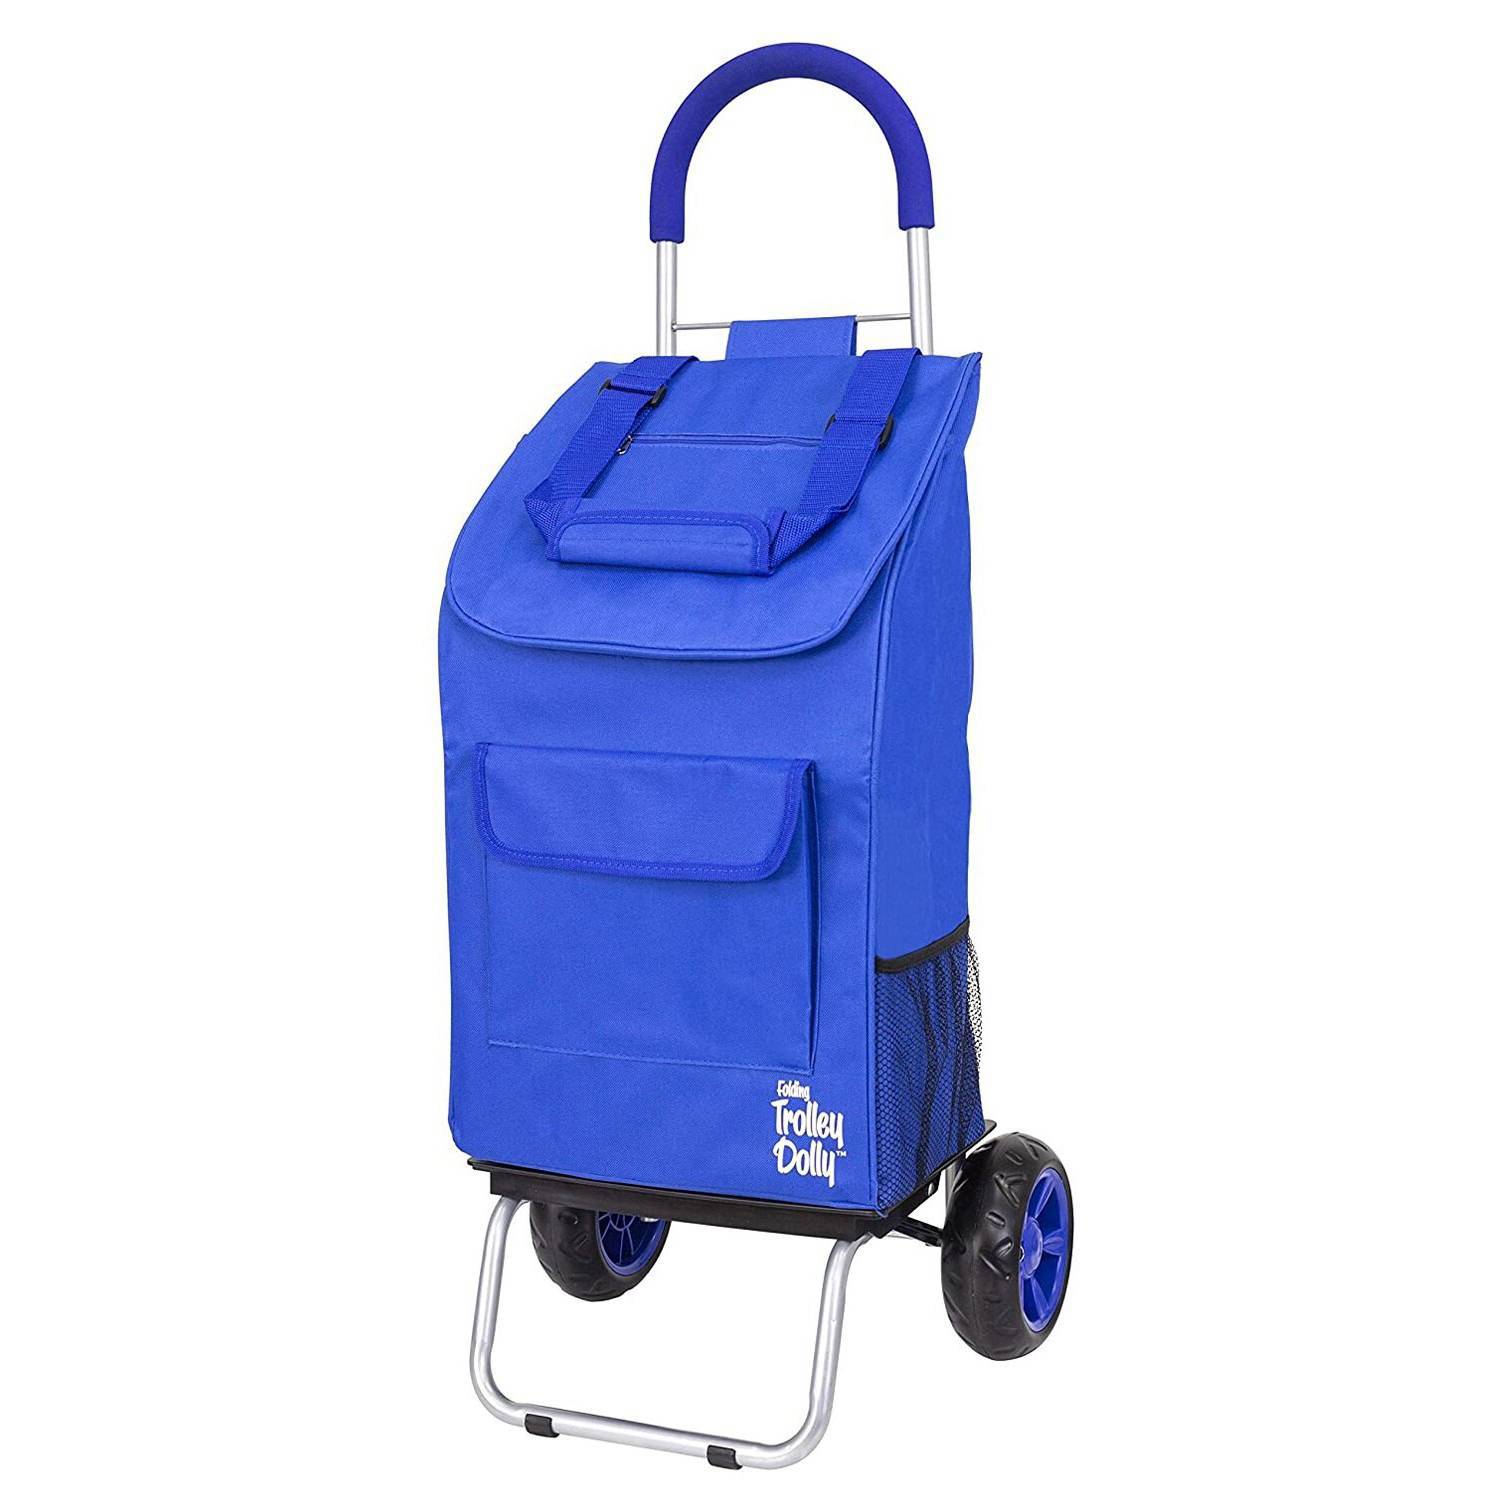 dbest products – Carrito plegable de carga y compras de color azul